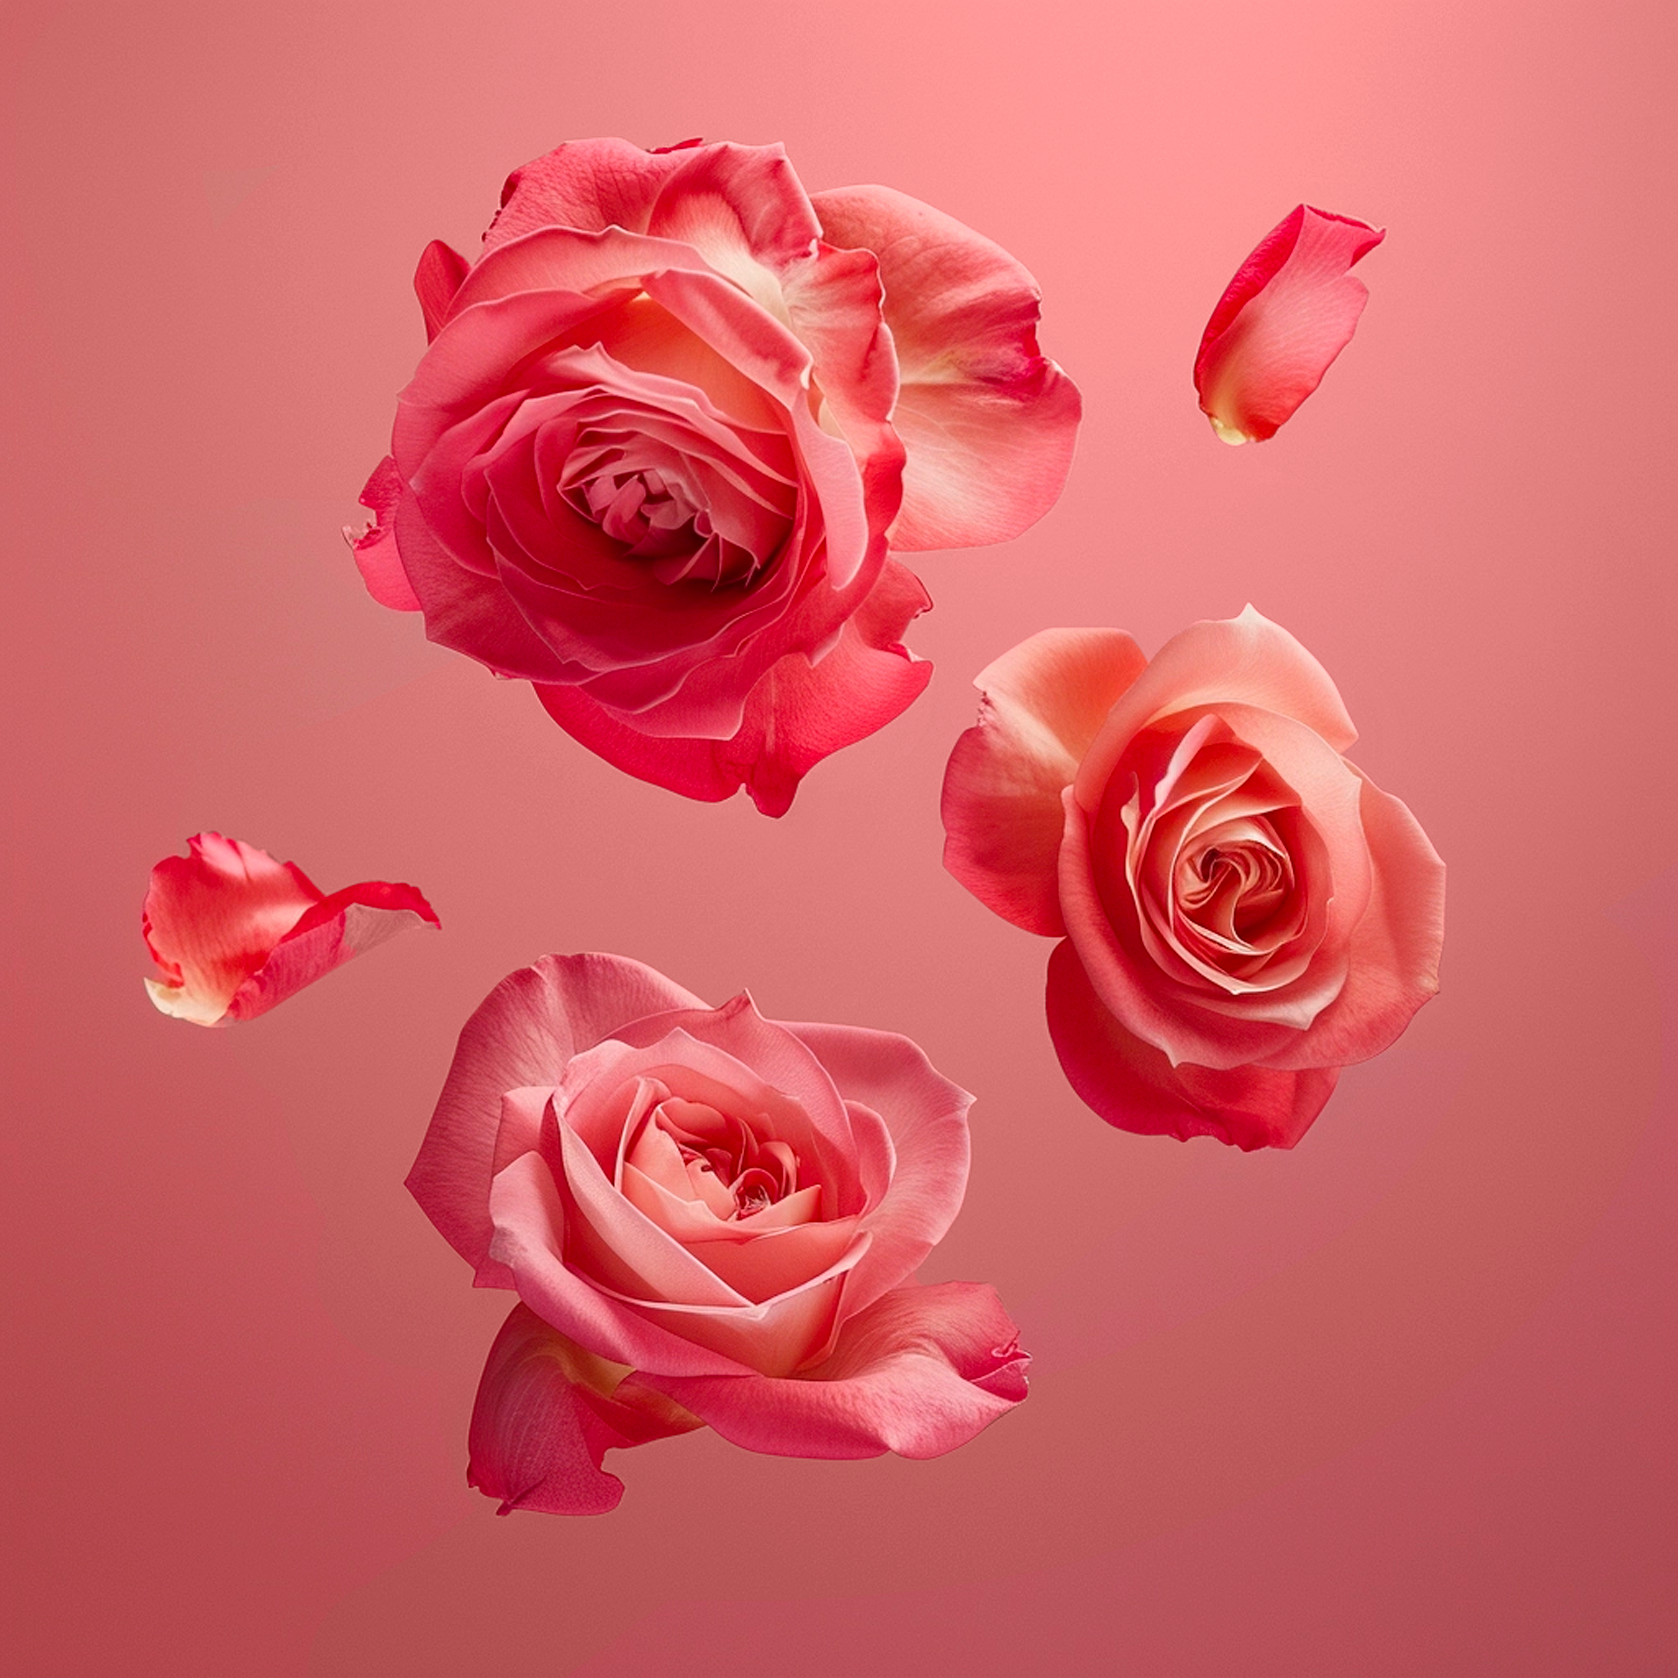 Accord de fleurs de rose. Sur un fond rose, photographie d’un groupe de roses rouges flottant dans le vide est représenté. Il y a une grande rose complètement éclose au centre, entourée de boutons de roses et de roses partiellement ouvertes, avec des détails visibles des pétales. 